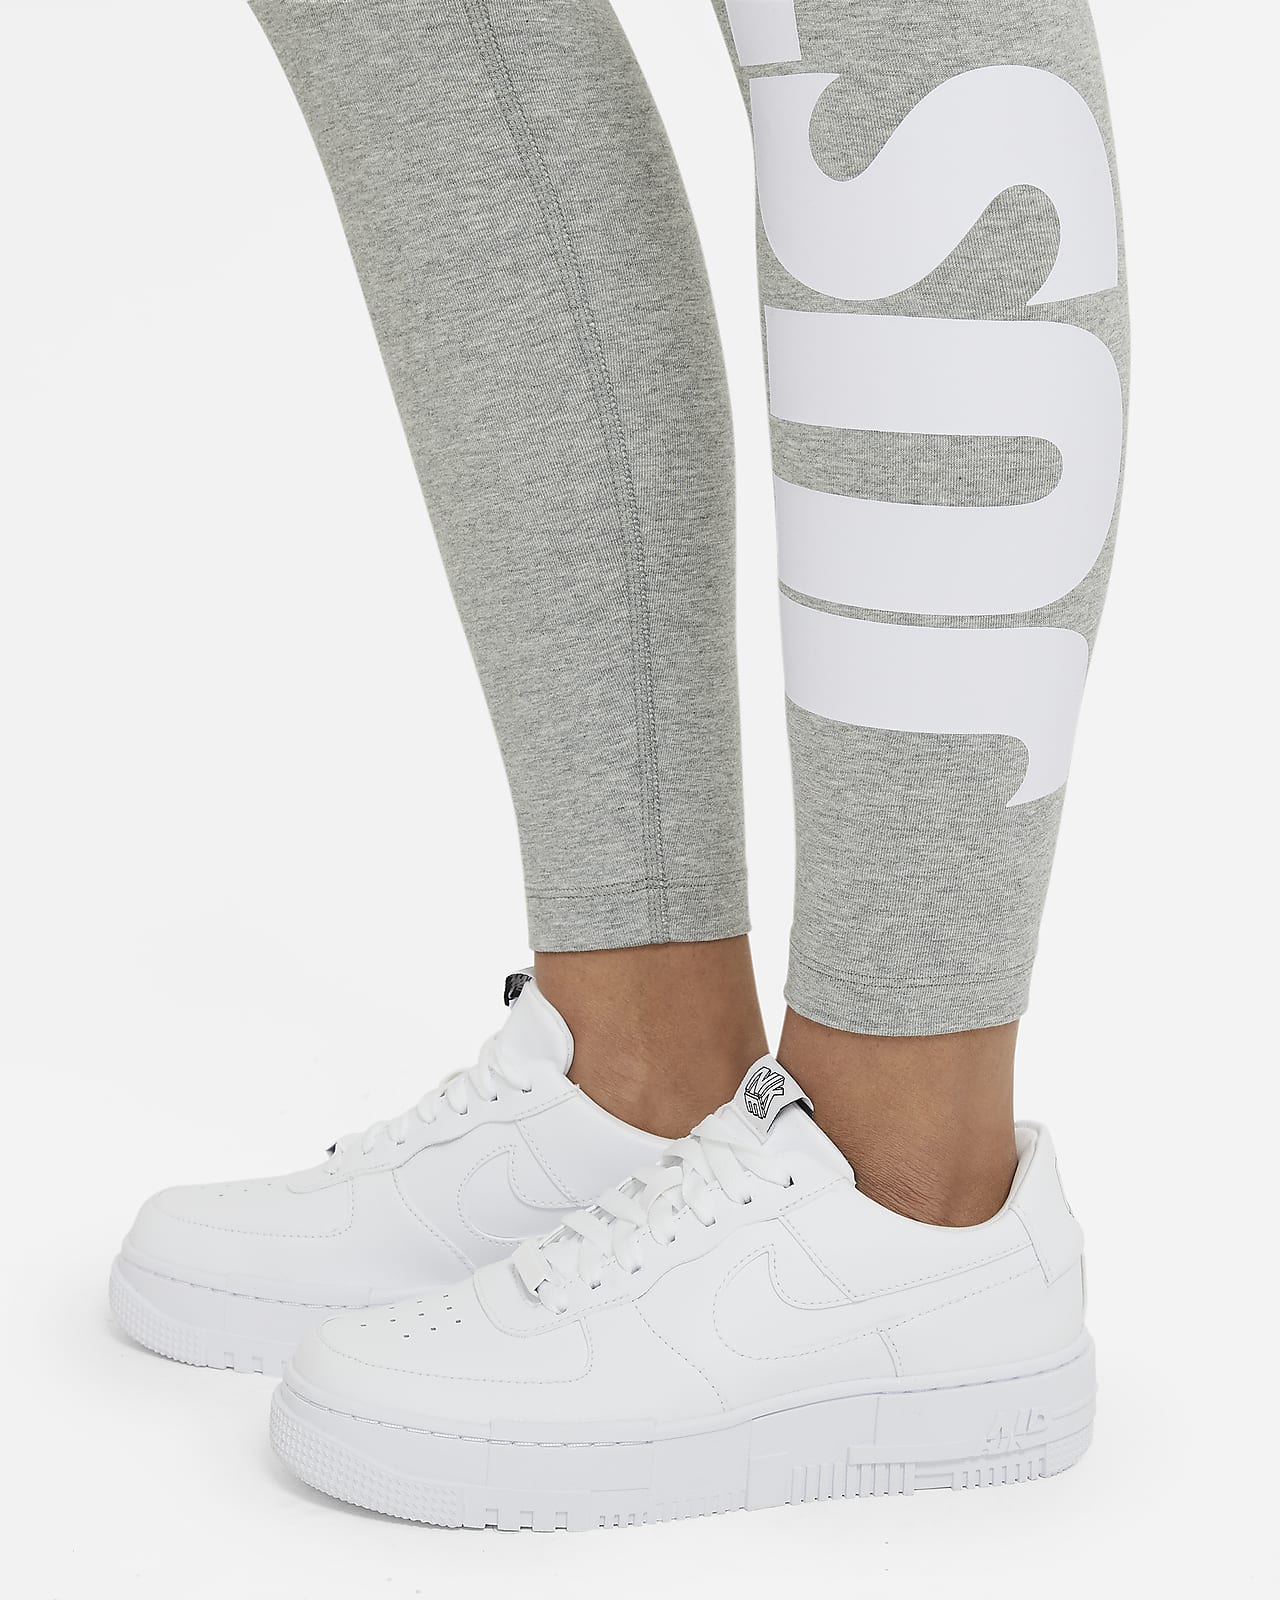 Leggings Nike de mujer